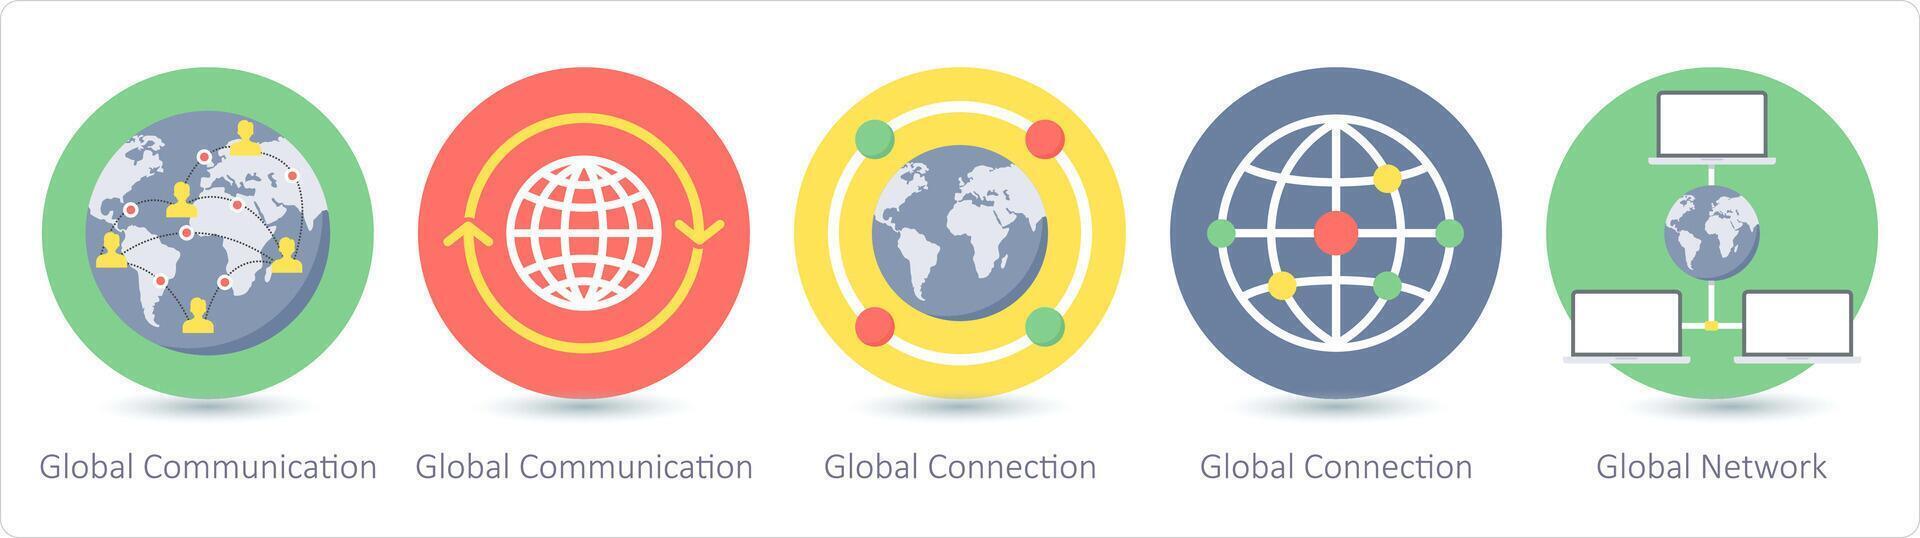 en uppsättning av 5 kommunikation ikoner som global kommunikation, global förbindelse, global nätverk vektor